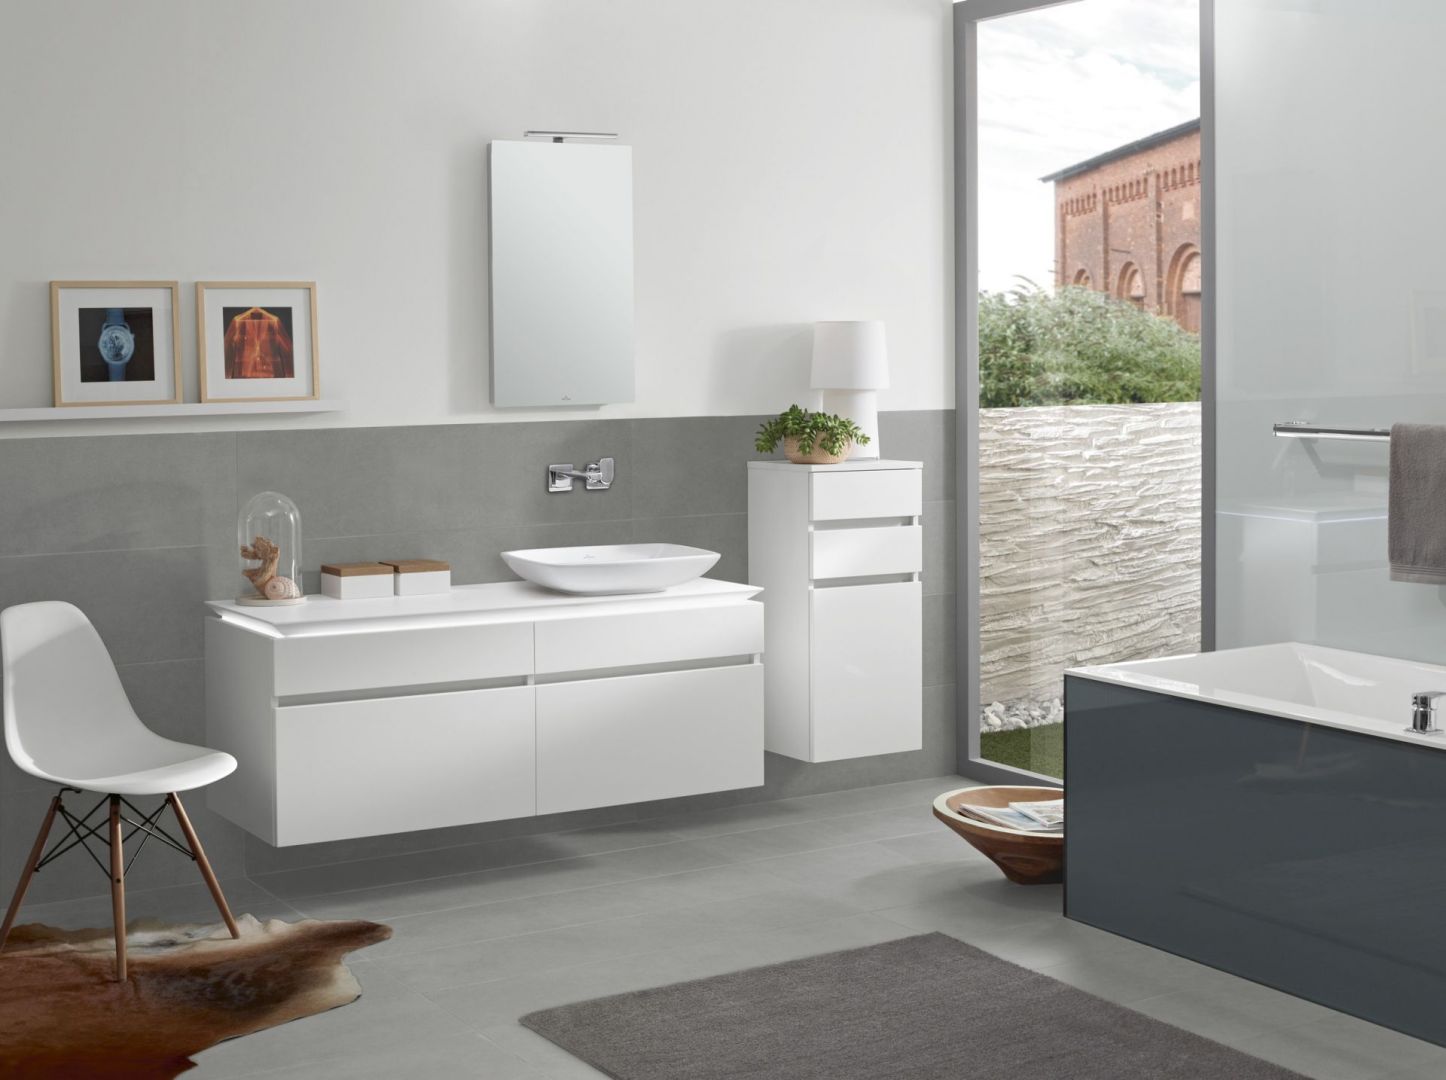 Meble łazienkowe Legato marki Villeroy&Boch charakteryzują się prostym kształtem. Dzięki systemowi podwieszania łazienka zyska na lekkości. Fot. Villeroy&Boch